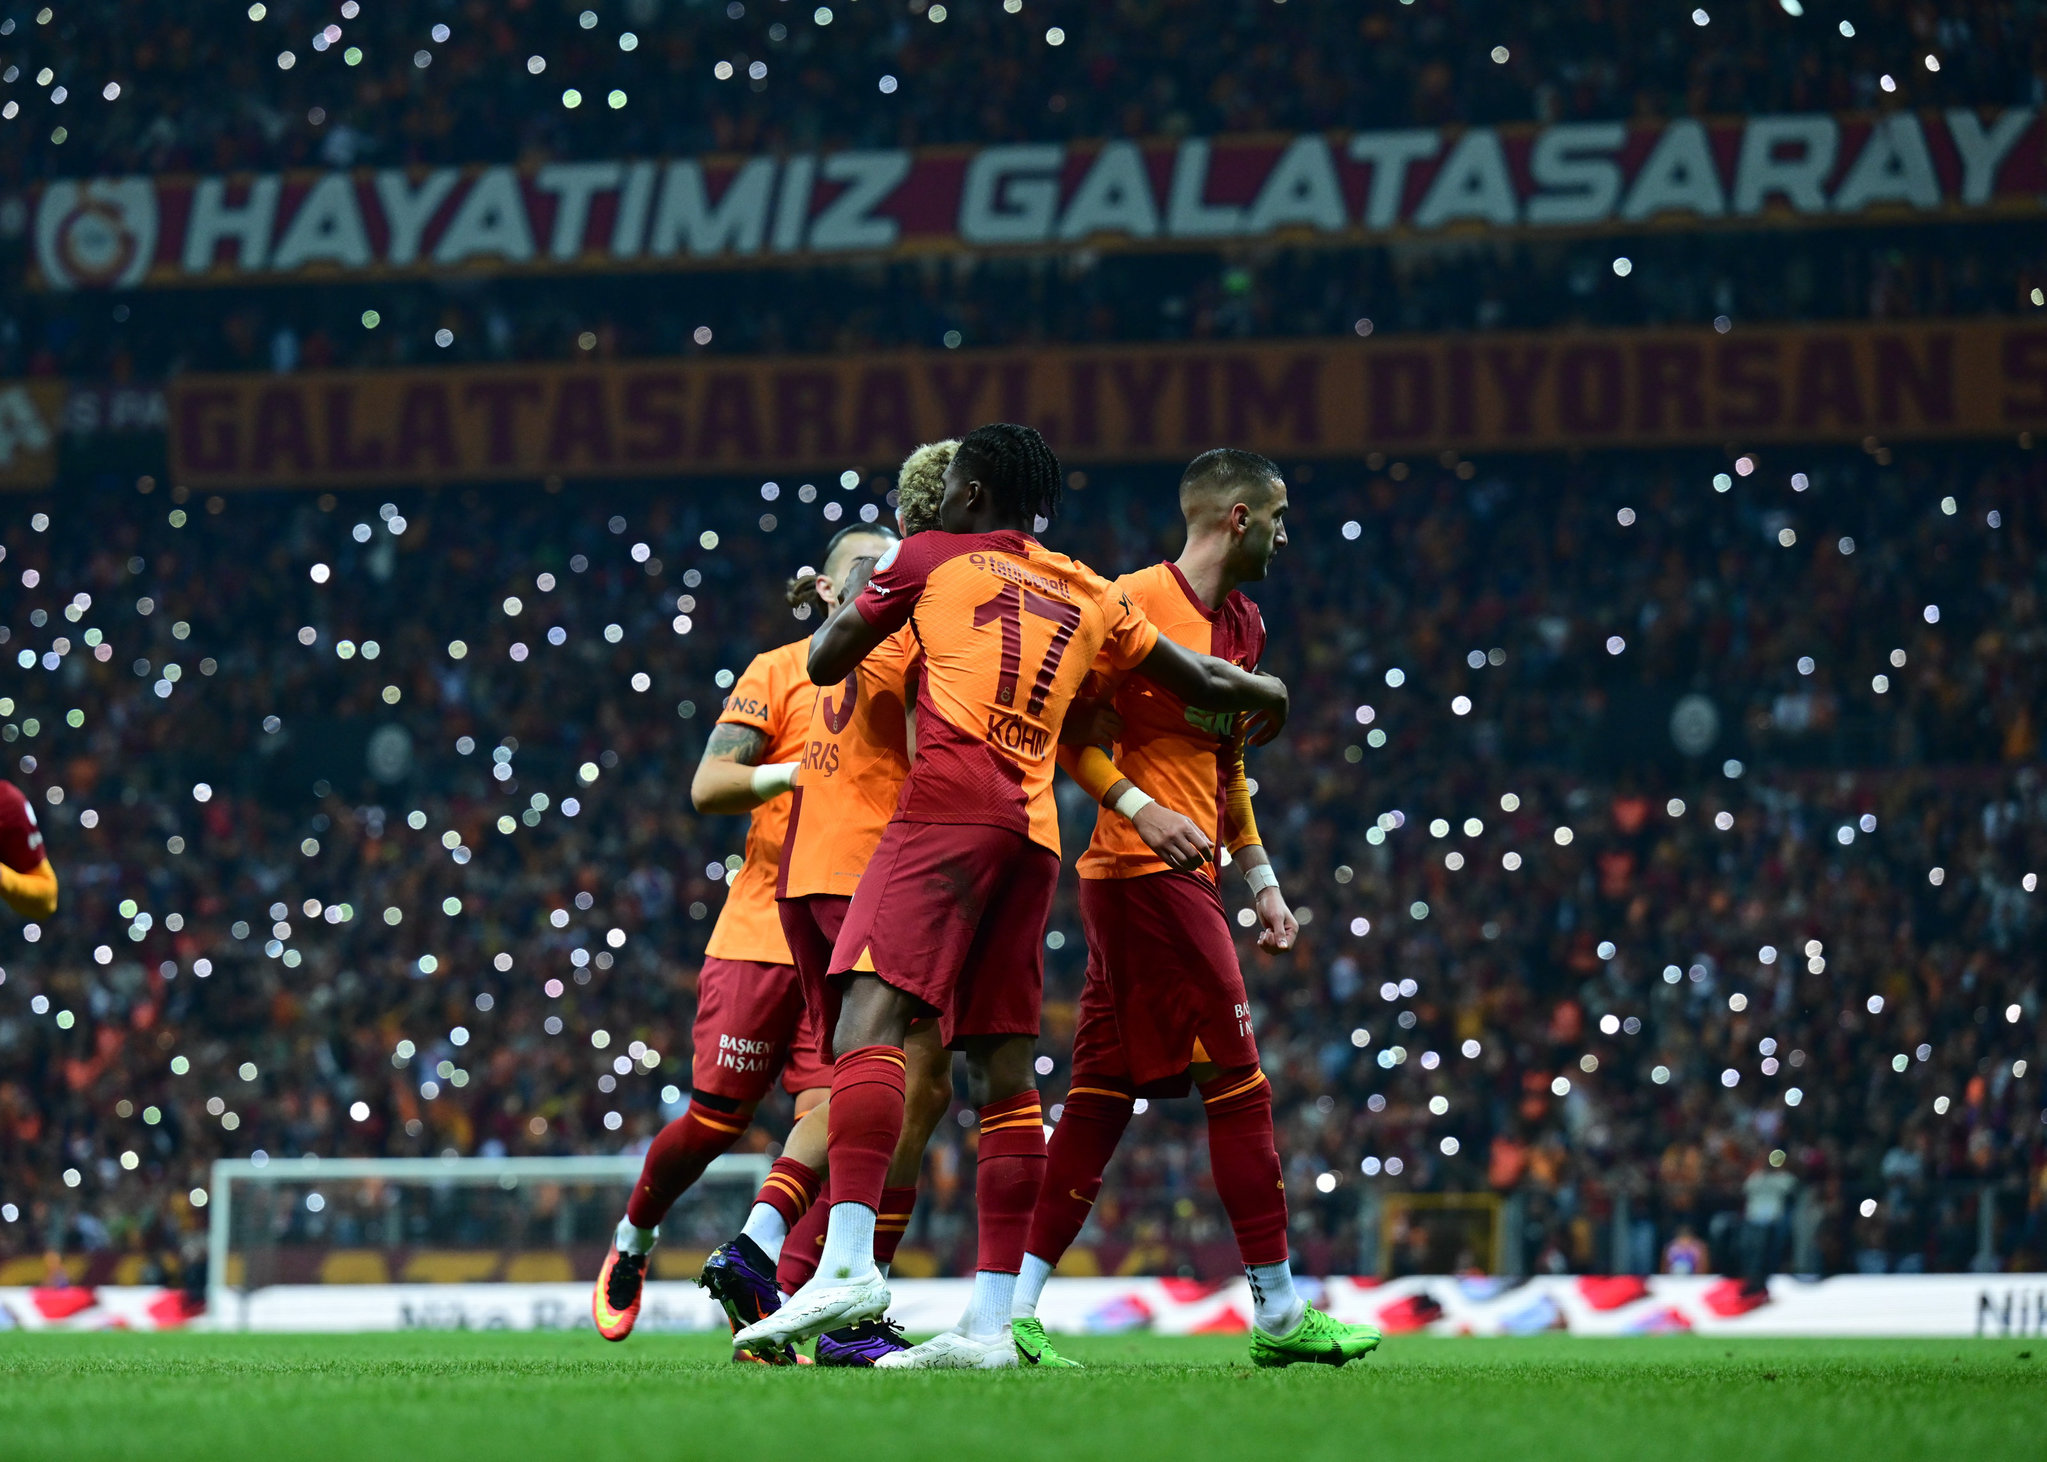 Galatasaray’a dev gelir! Cimbom’un kasası böyle dolacak